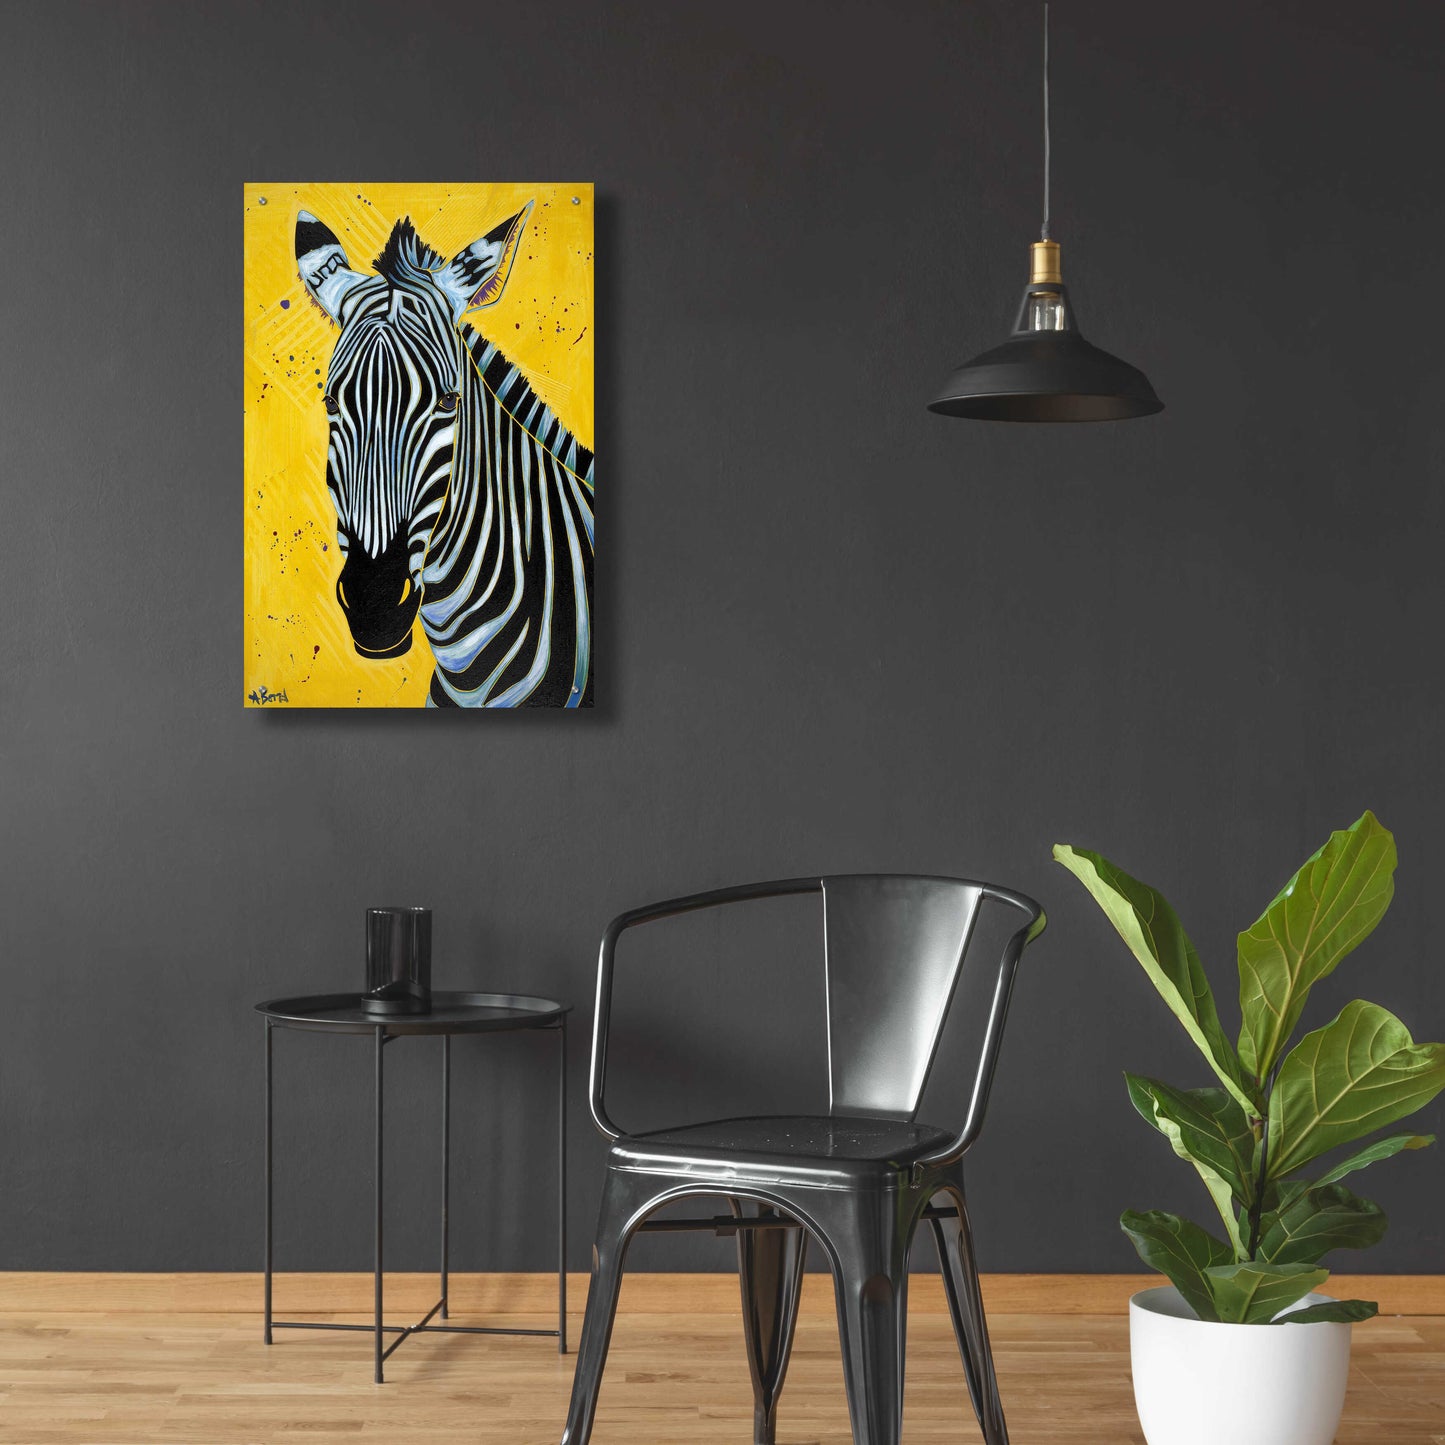 Epic Art 'Zebra' by Angela Bond Acrylic Glass Wall Art,24x36